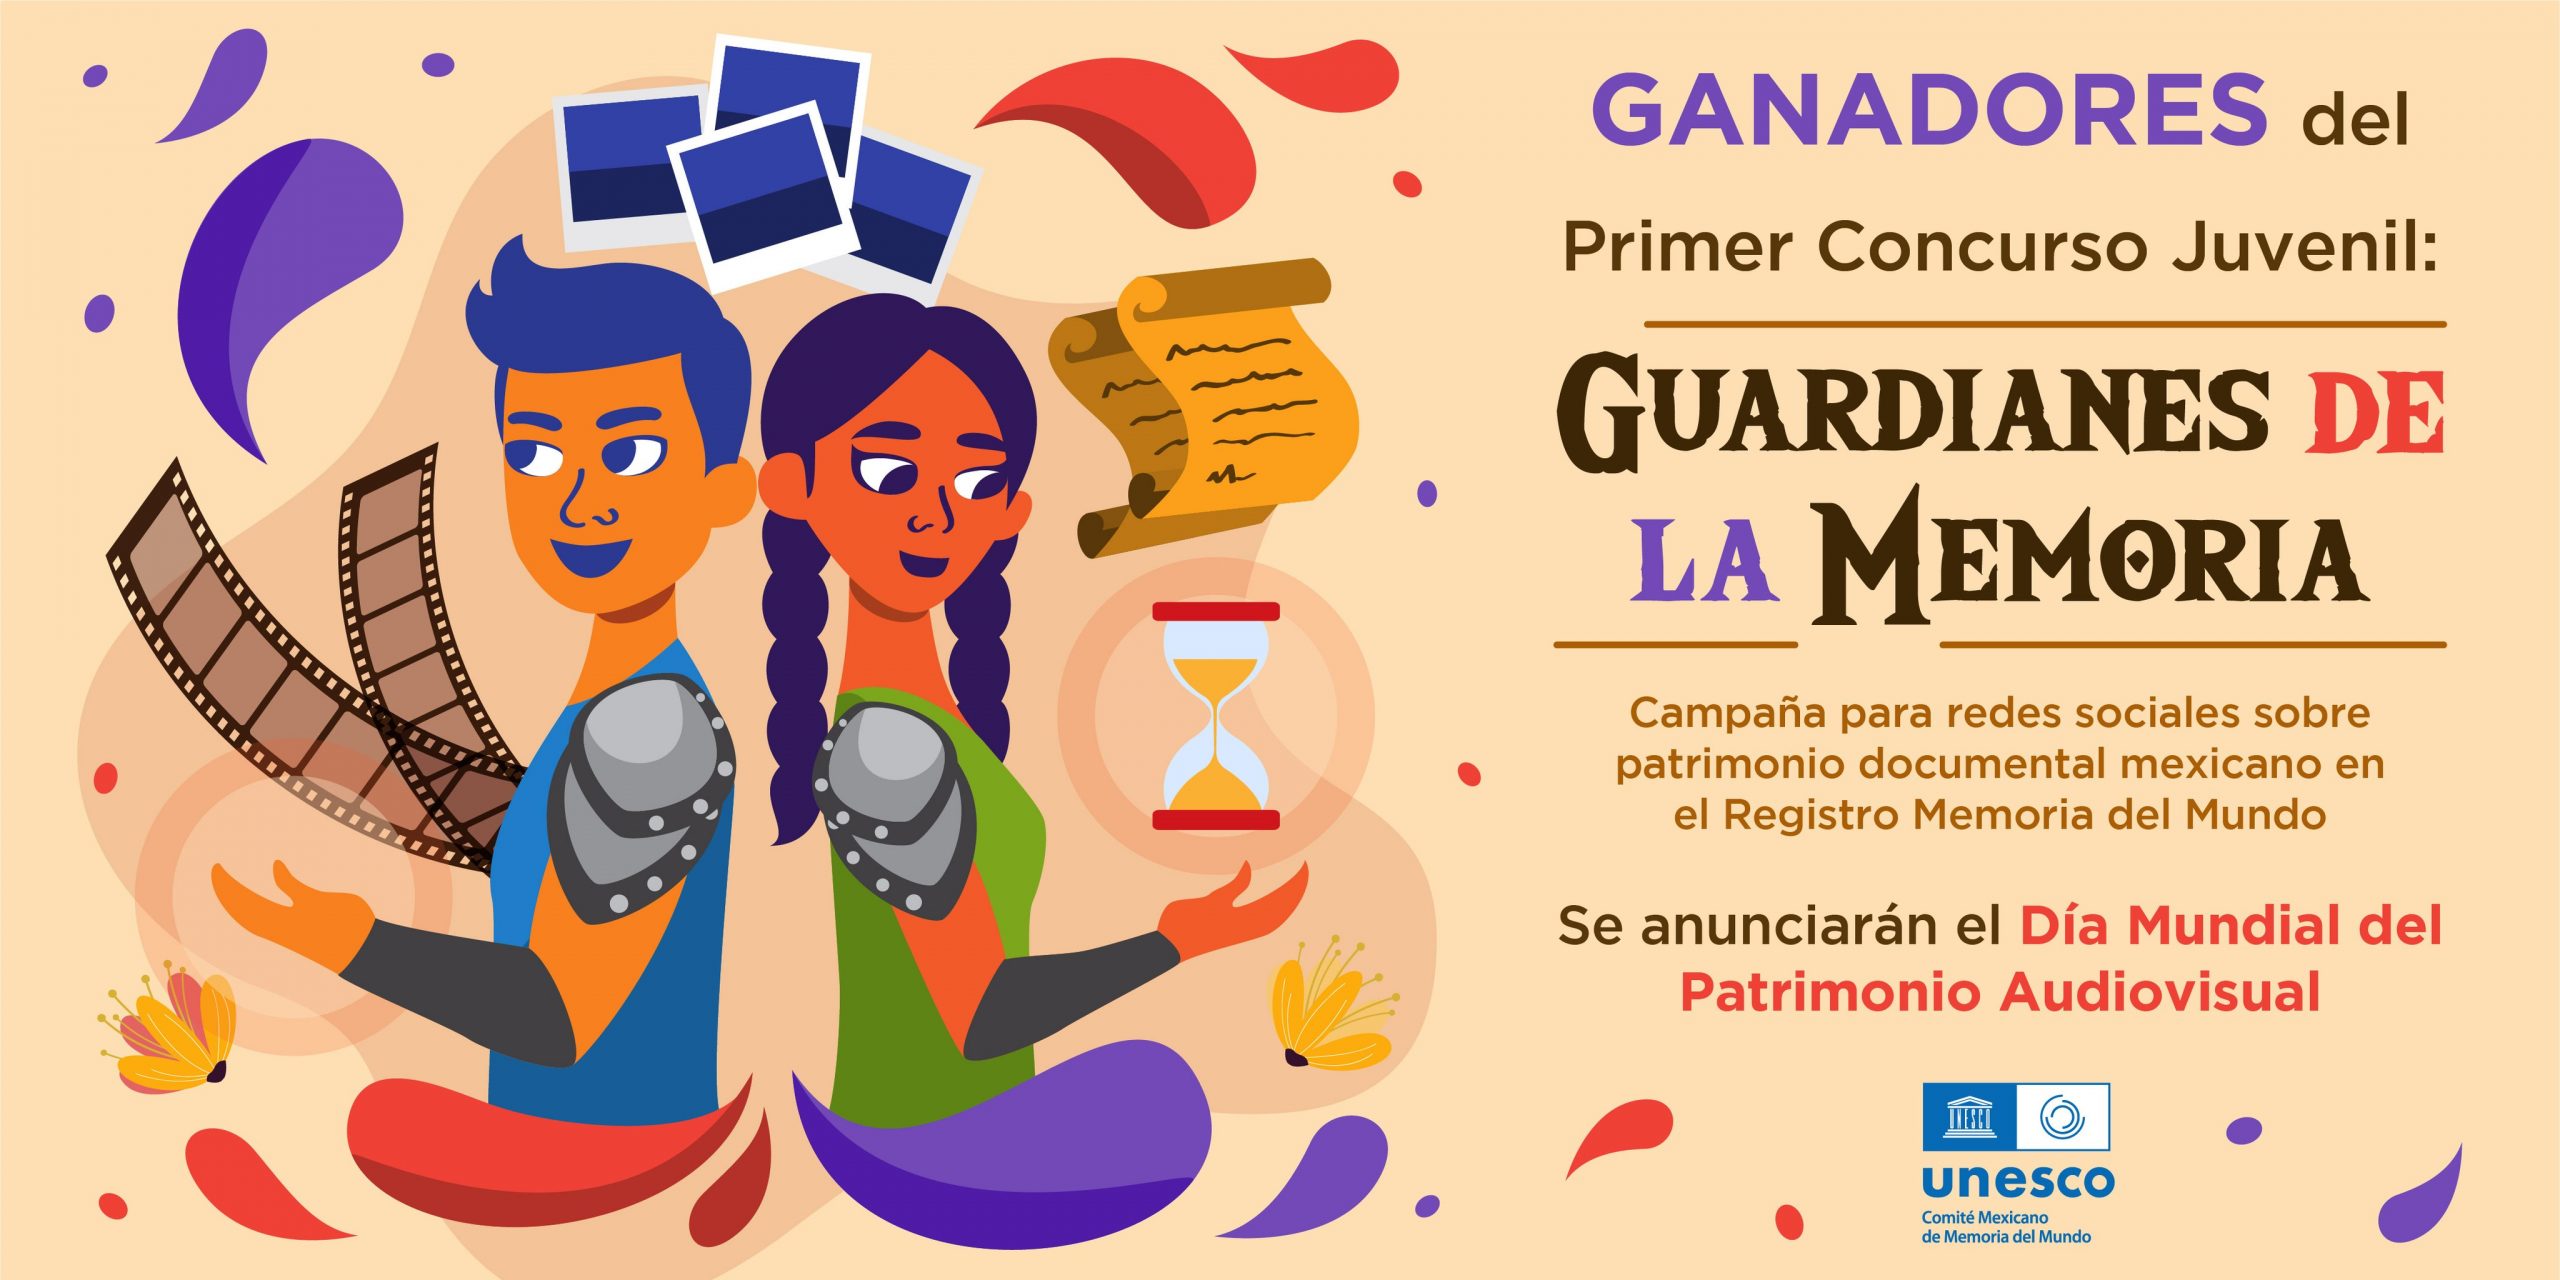 El anuncio de los ganadores del concurso “Guardianes de la Memoria”, que apoya el CMMM, se llevará a cabo el 27 de octubre